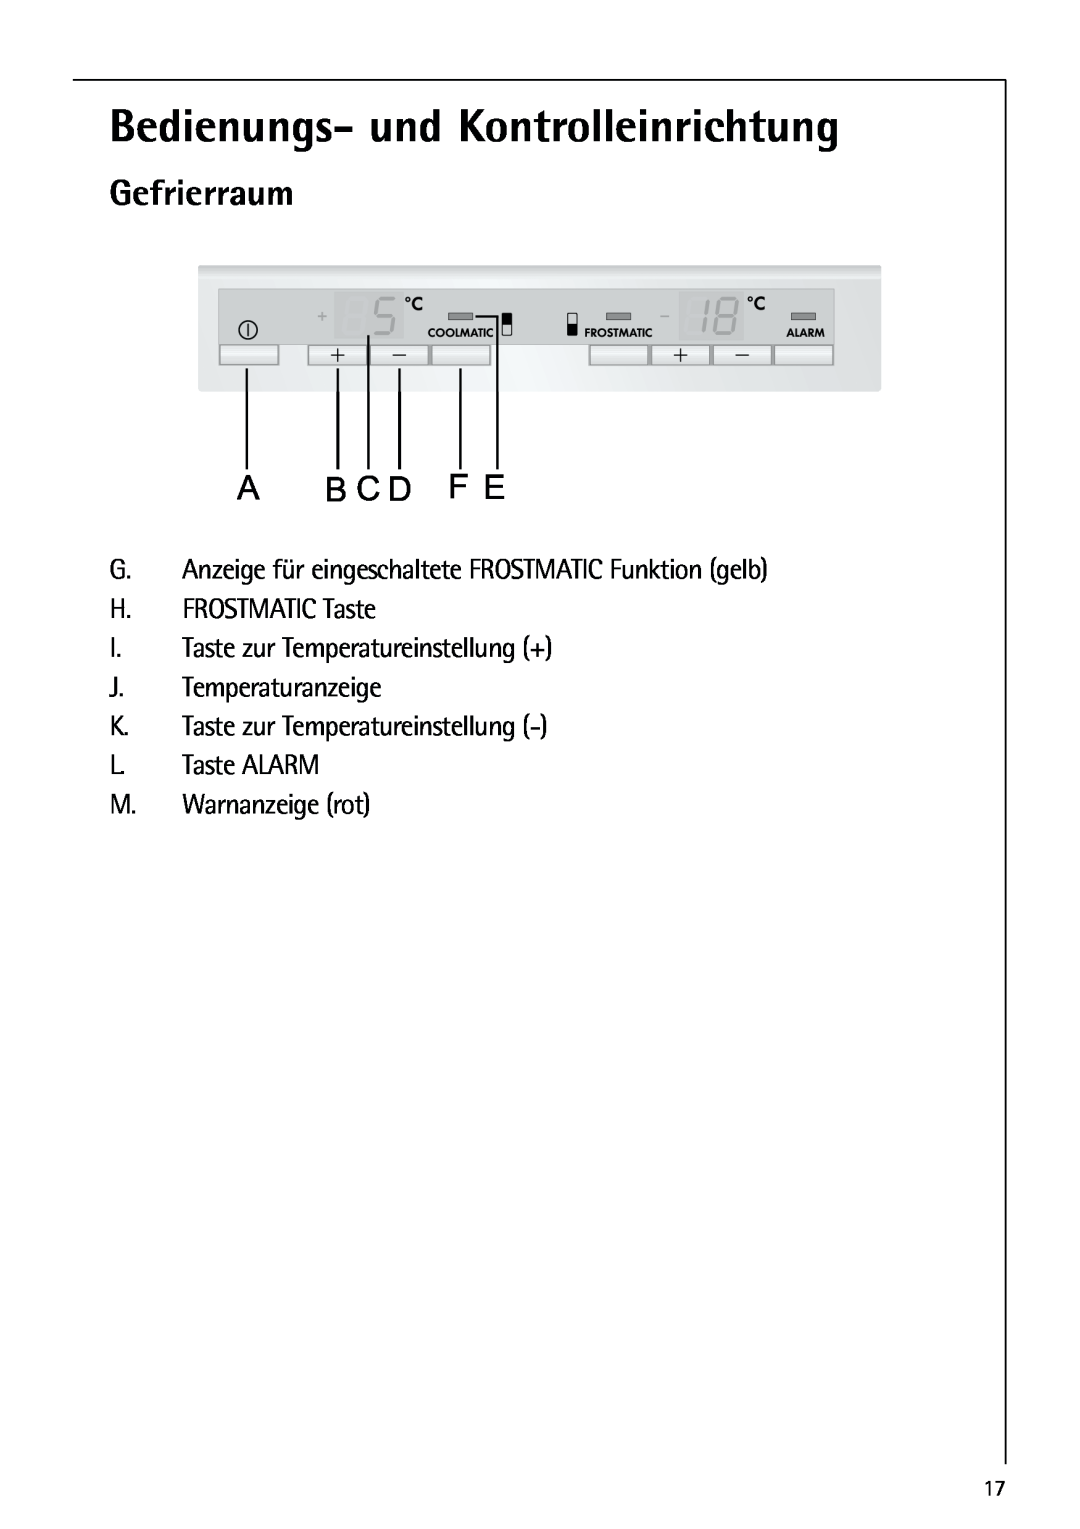 AEG 80318-5 KG user manual Gefrierraum, Bedienungs- und Kontrolleinrichtung, B C D, L. Taste ALARM M. Warnanzeige rot 